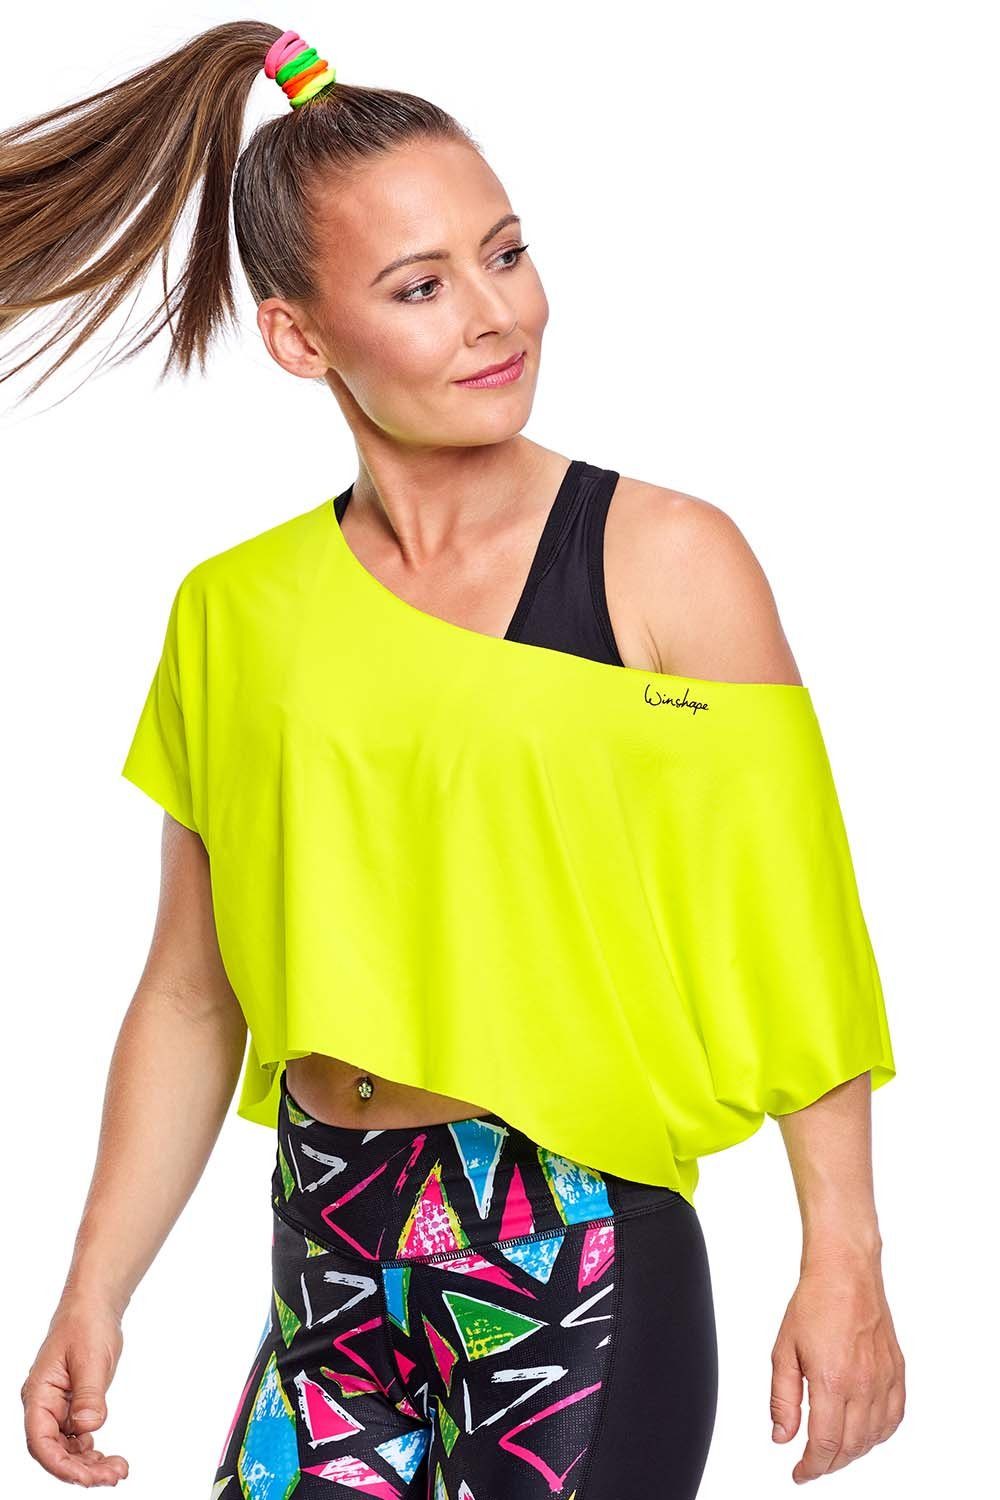 Winshape Oversize-Shirt DT104 gelb neon Functional